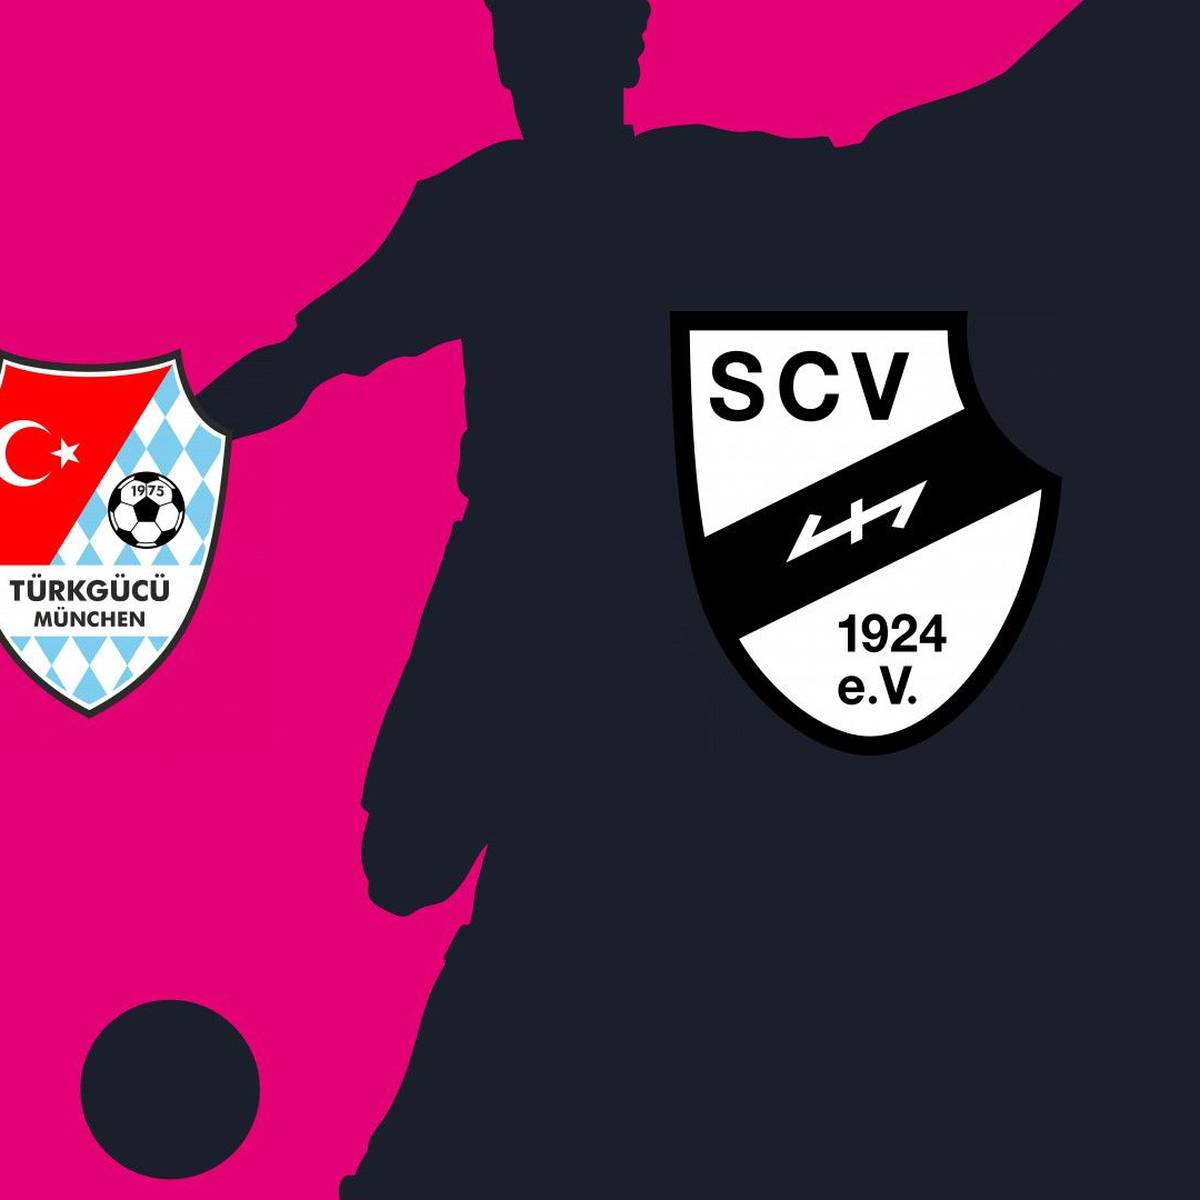 Türkgücü München - SC Verl (Highlights)